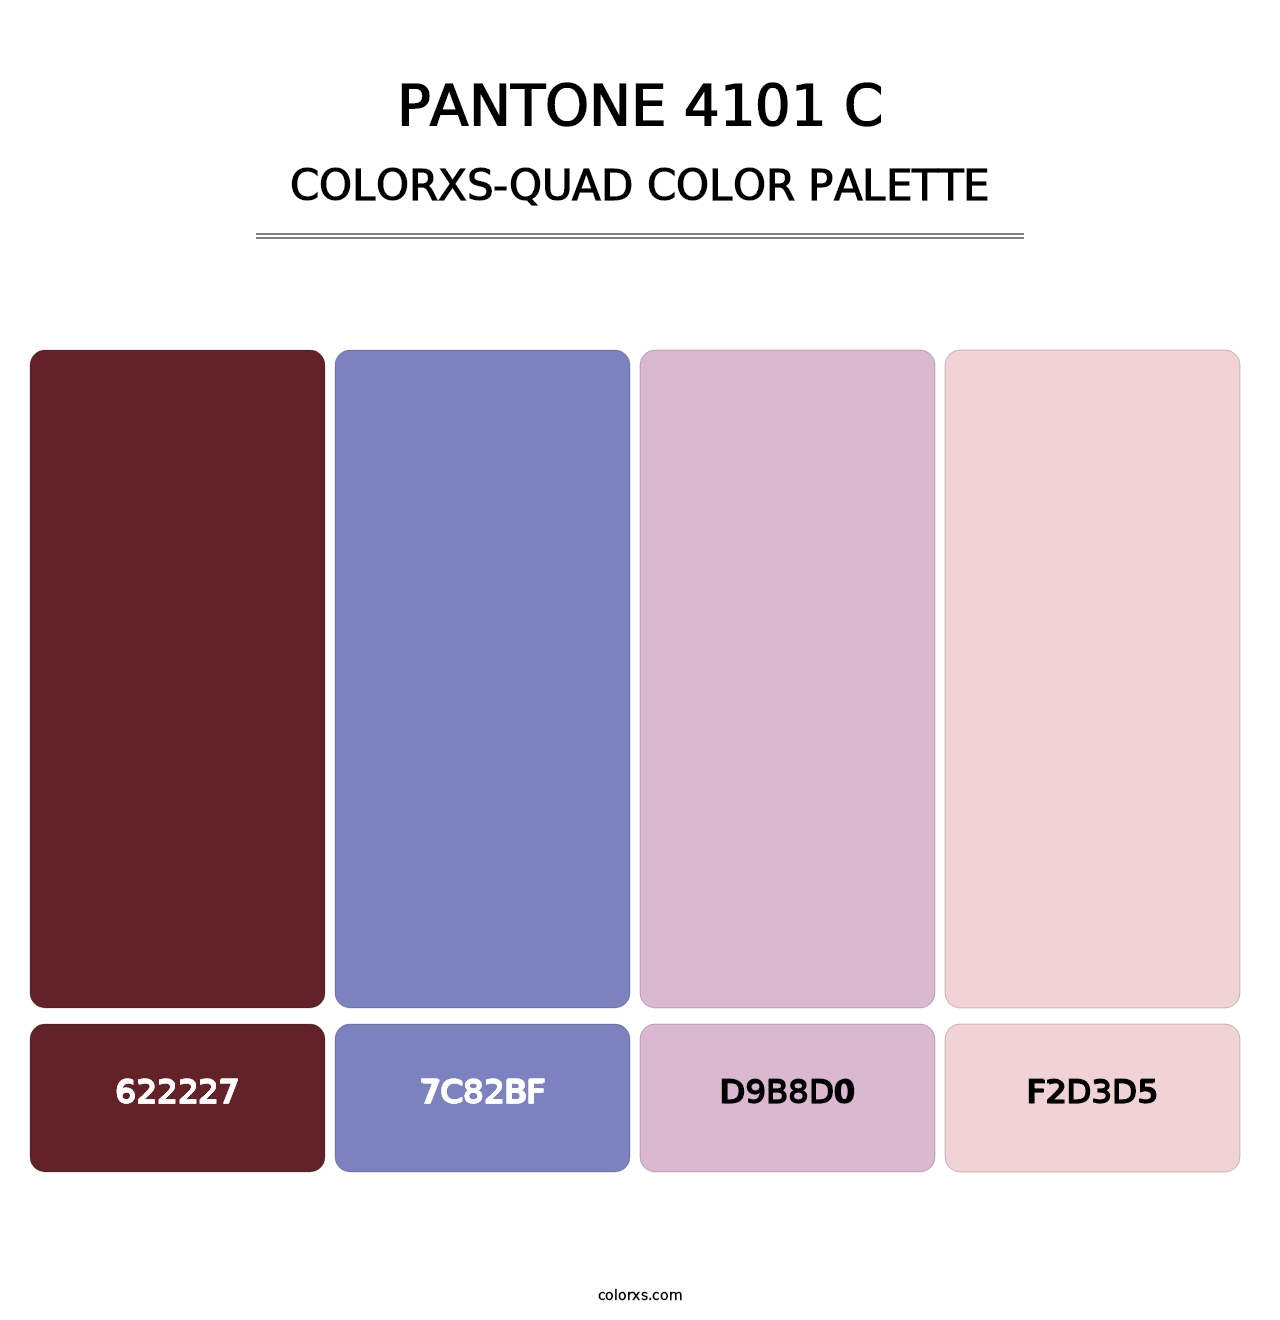 PANTONE 4101 C - Colorxs Quad Palette